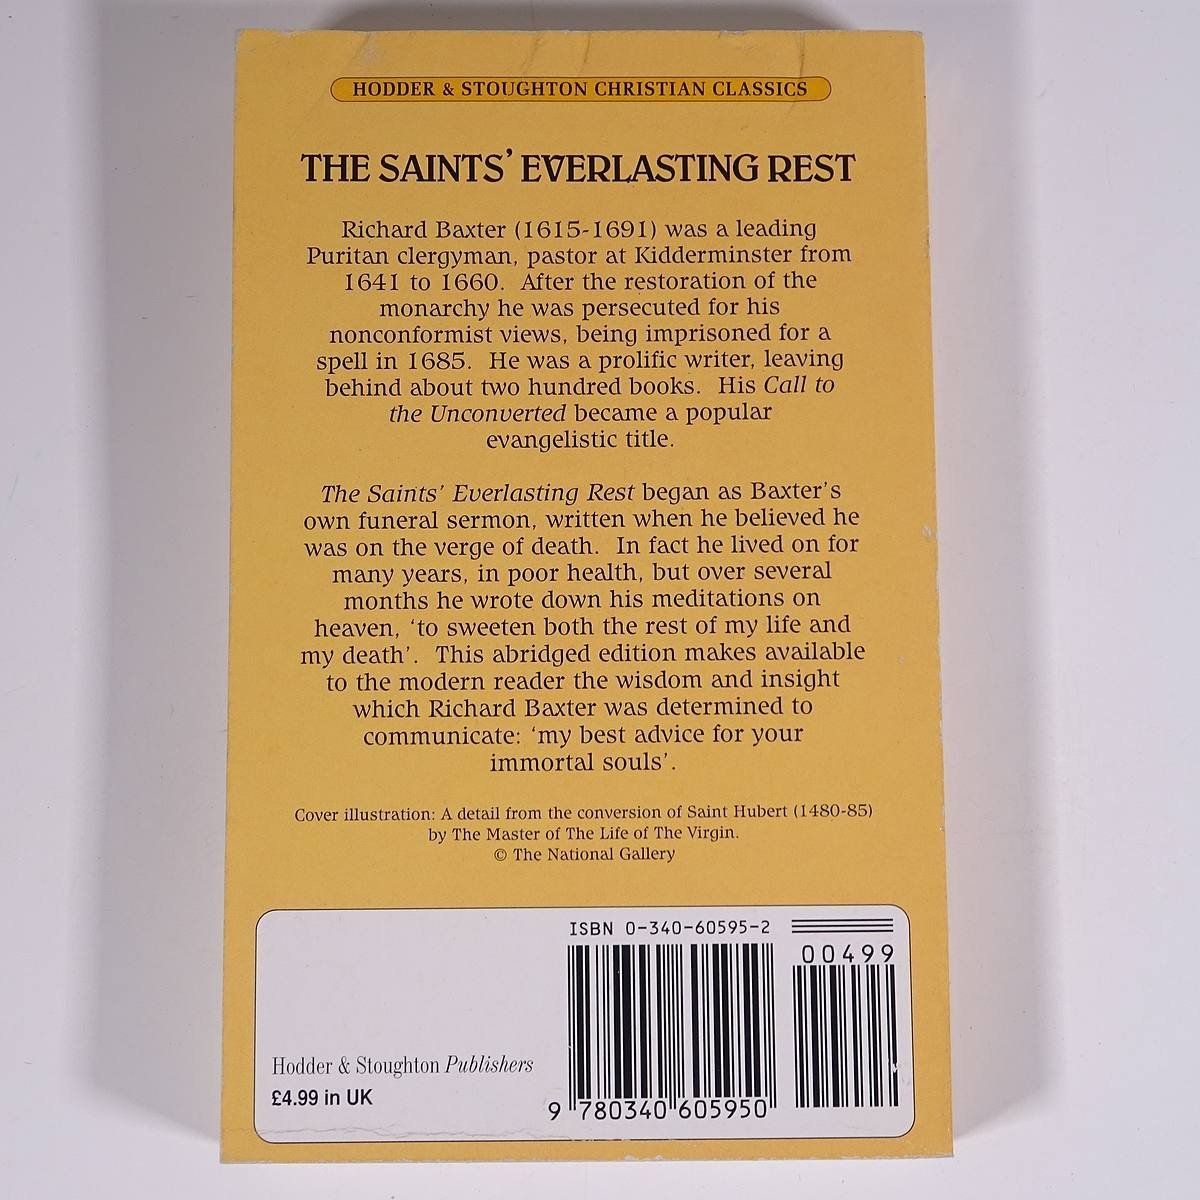 【英語洋書】 THE SAINTS’ EVERLASTING REST 聖人の永眠 Richard Baxter リチャード・バクスター著 1994 単行本 キリスト教_画像2